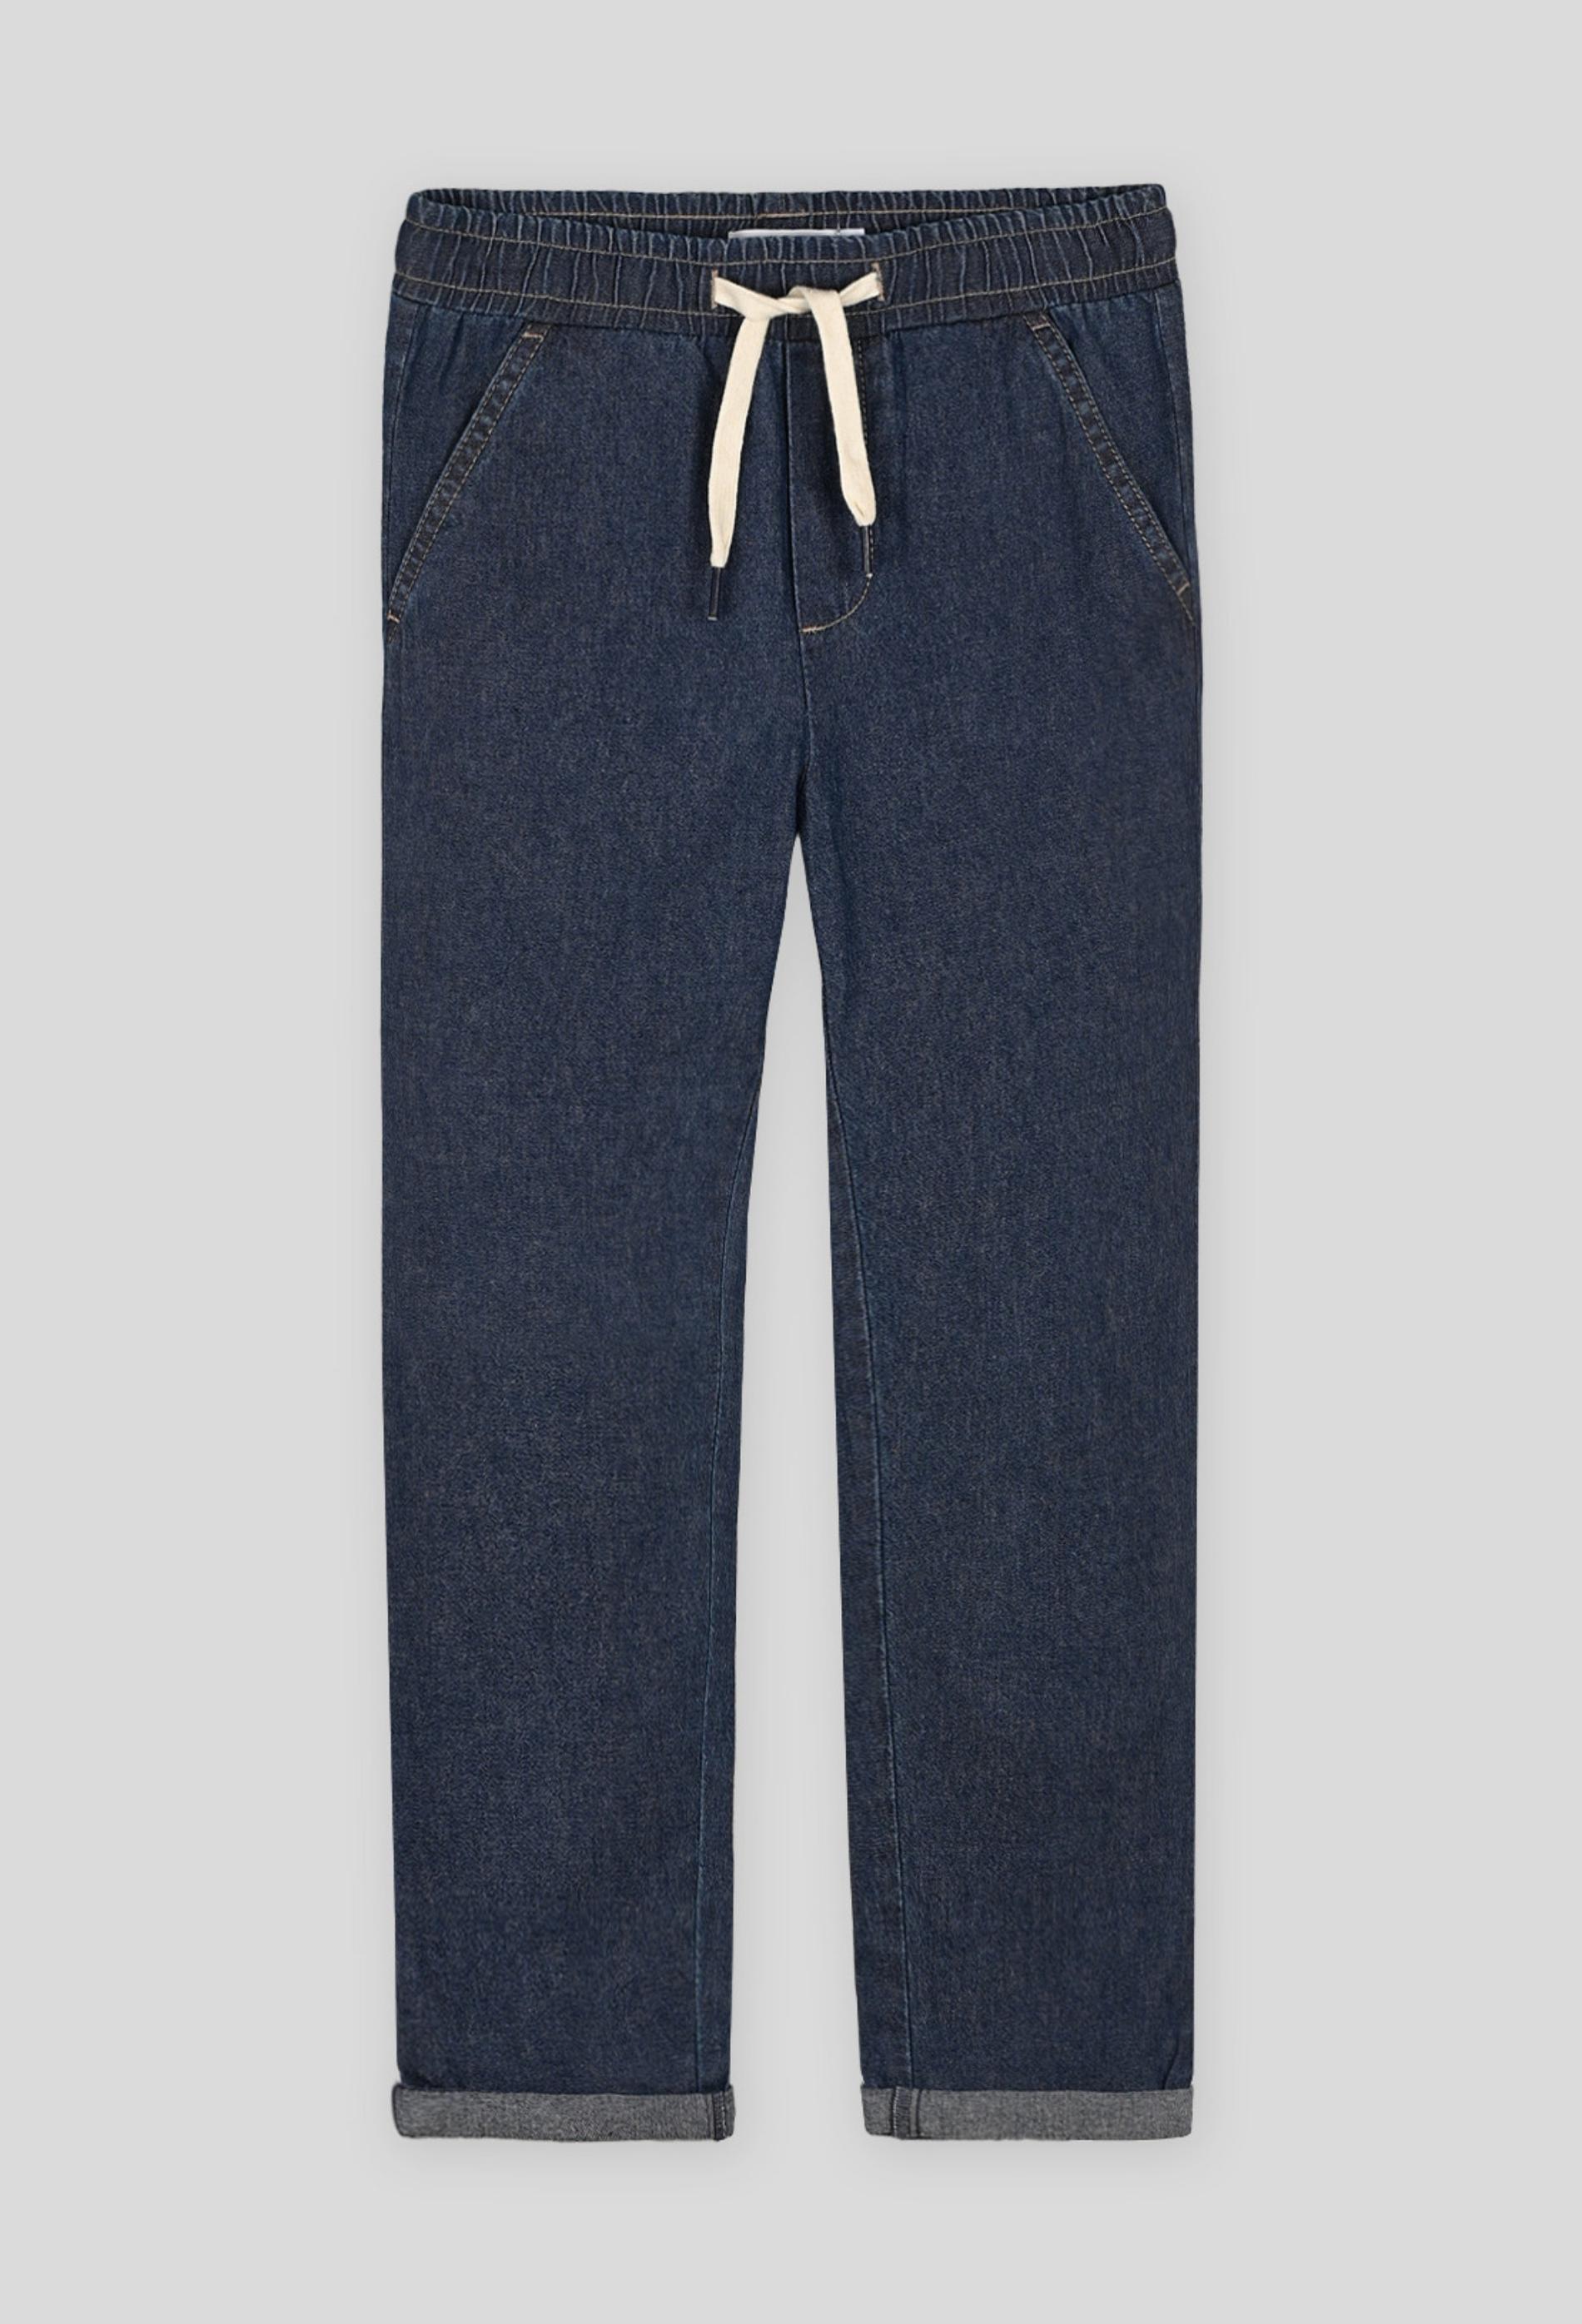 Pantalon droit confort avec cordon à la taille, certifié OEKO-TEX 6 ans bleu